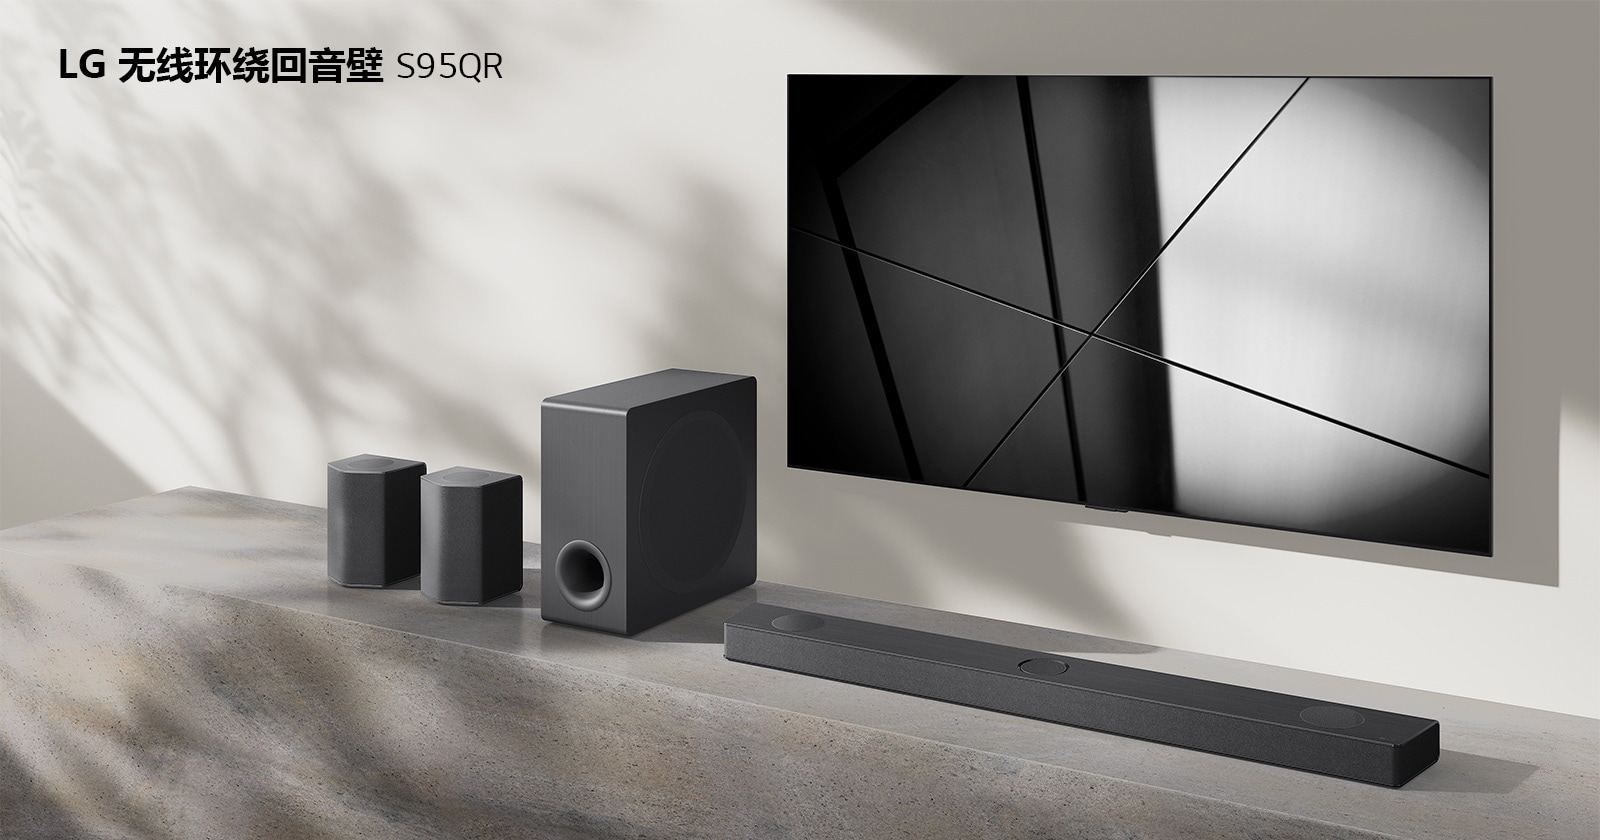 客厅中放着 LG 无线环绕回音壁 S95QR 和 LG 电视。电视打开，显示黑白图像。